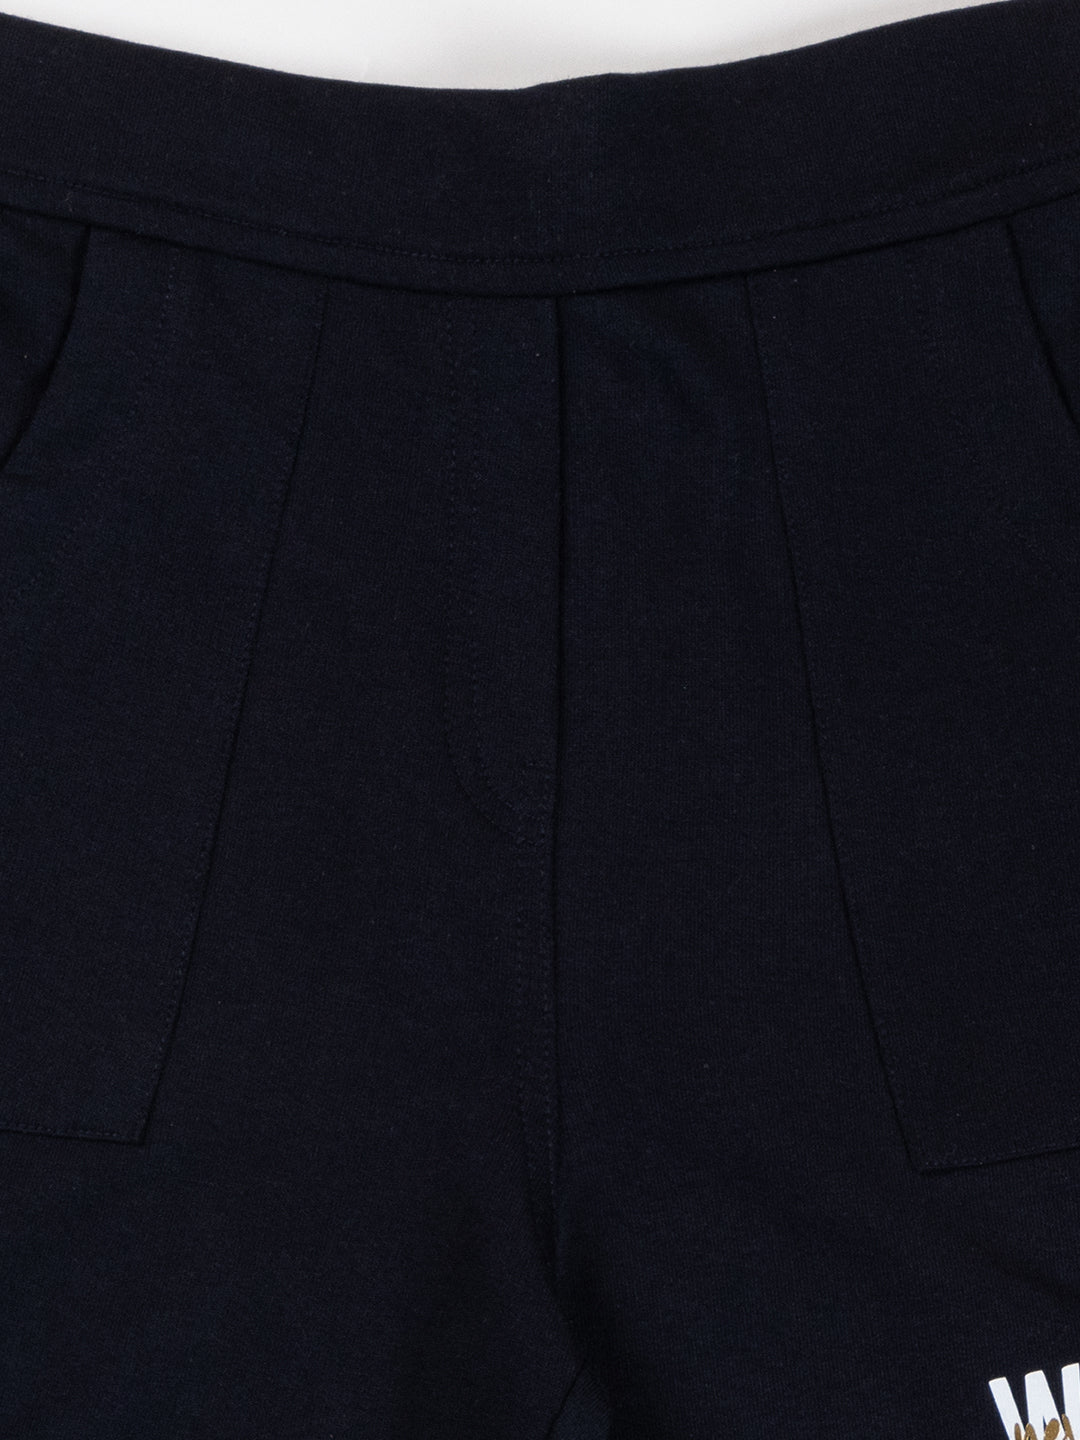 Pampolina Girls Solid Shorts-Navy